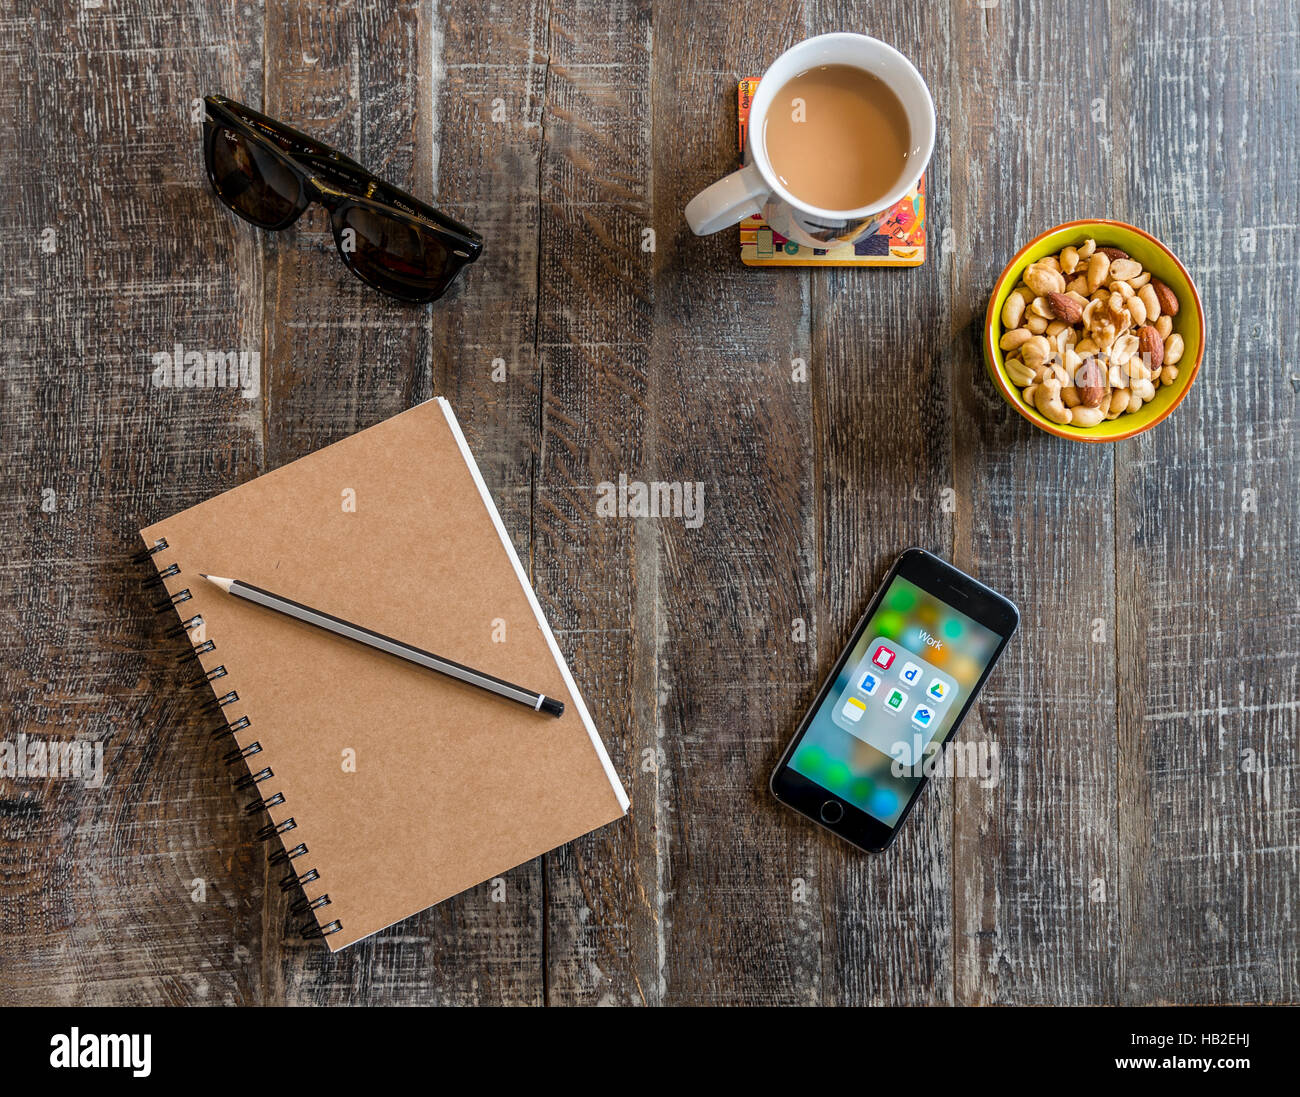 Smartphone, Notebook mit Stift, Sonnenbrille, Kaffee und Nüssen, snacks auf einem Holztisch Stockfoto